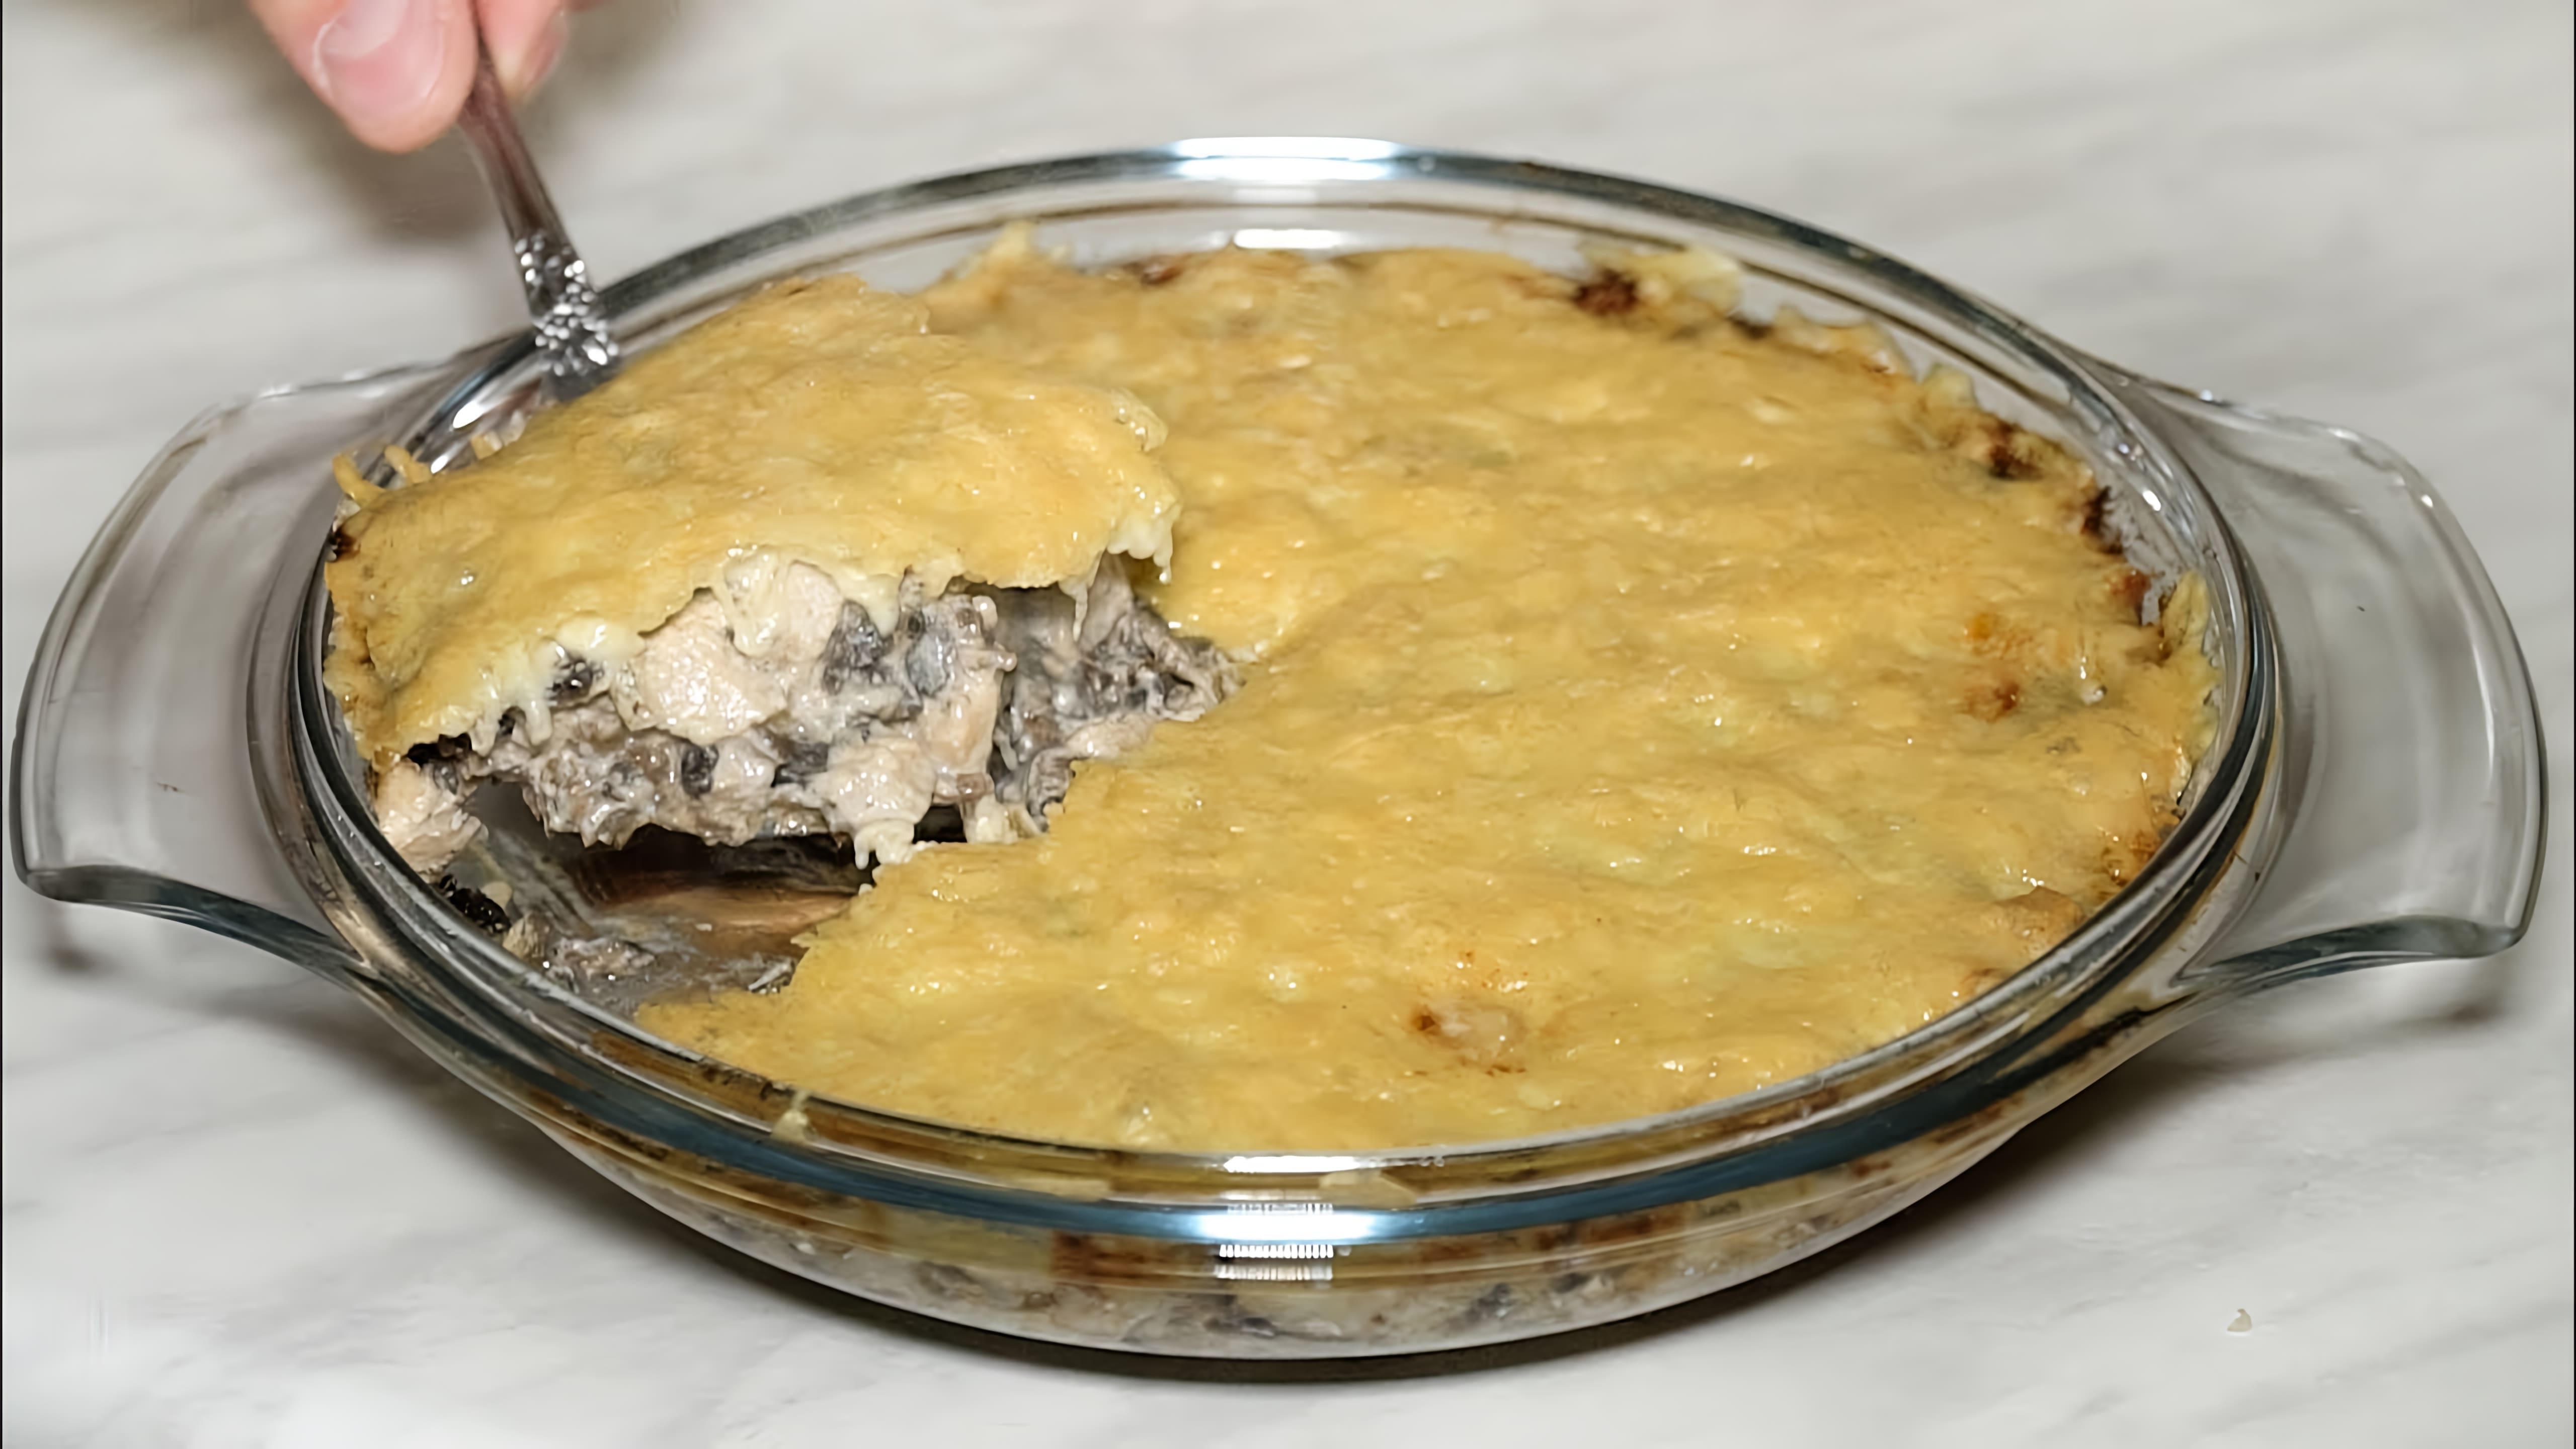 В этом видео демонстрируется рецепт приготовления жульена с курицей и грибами в духовке